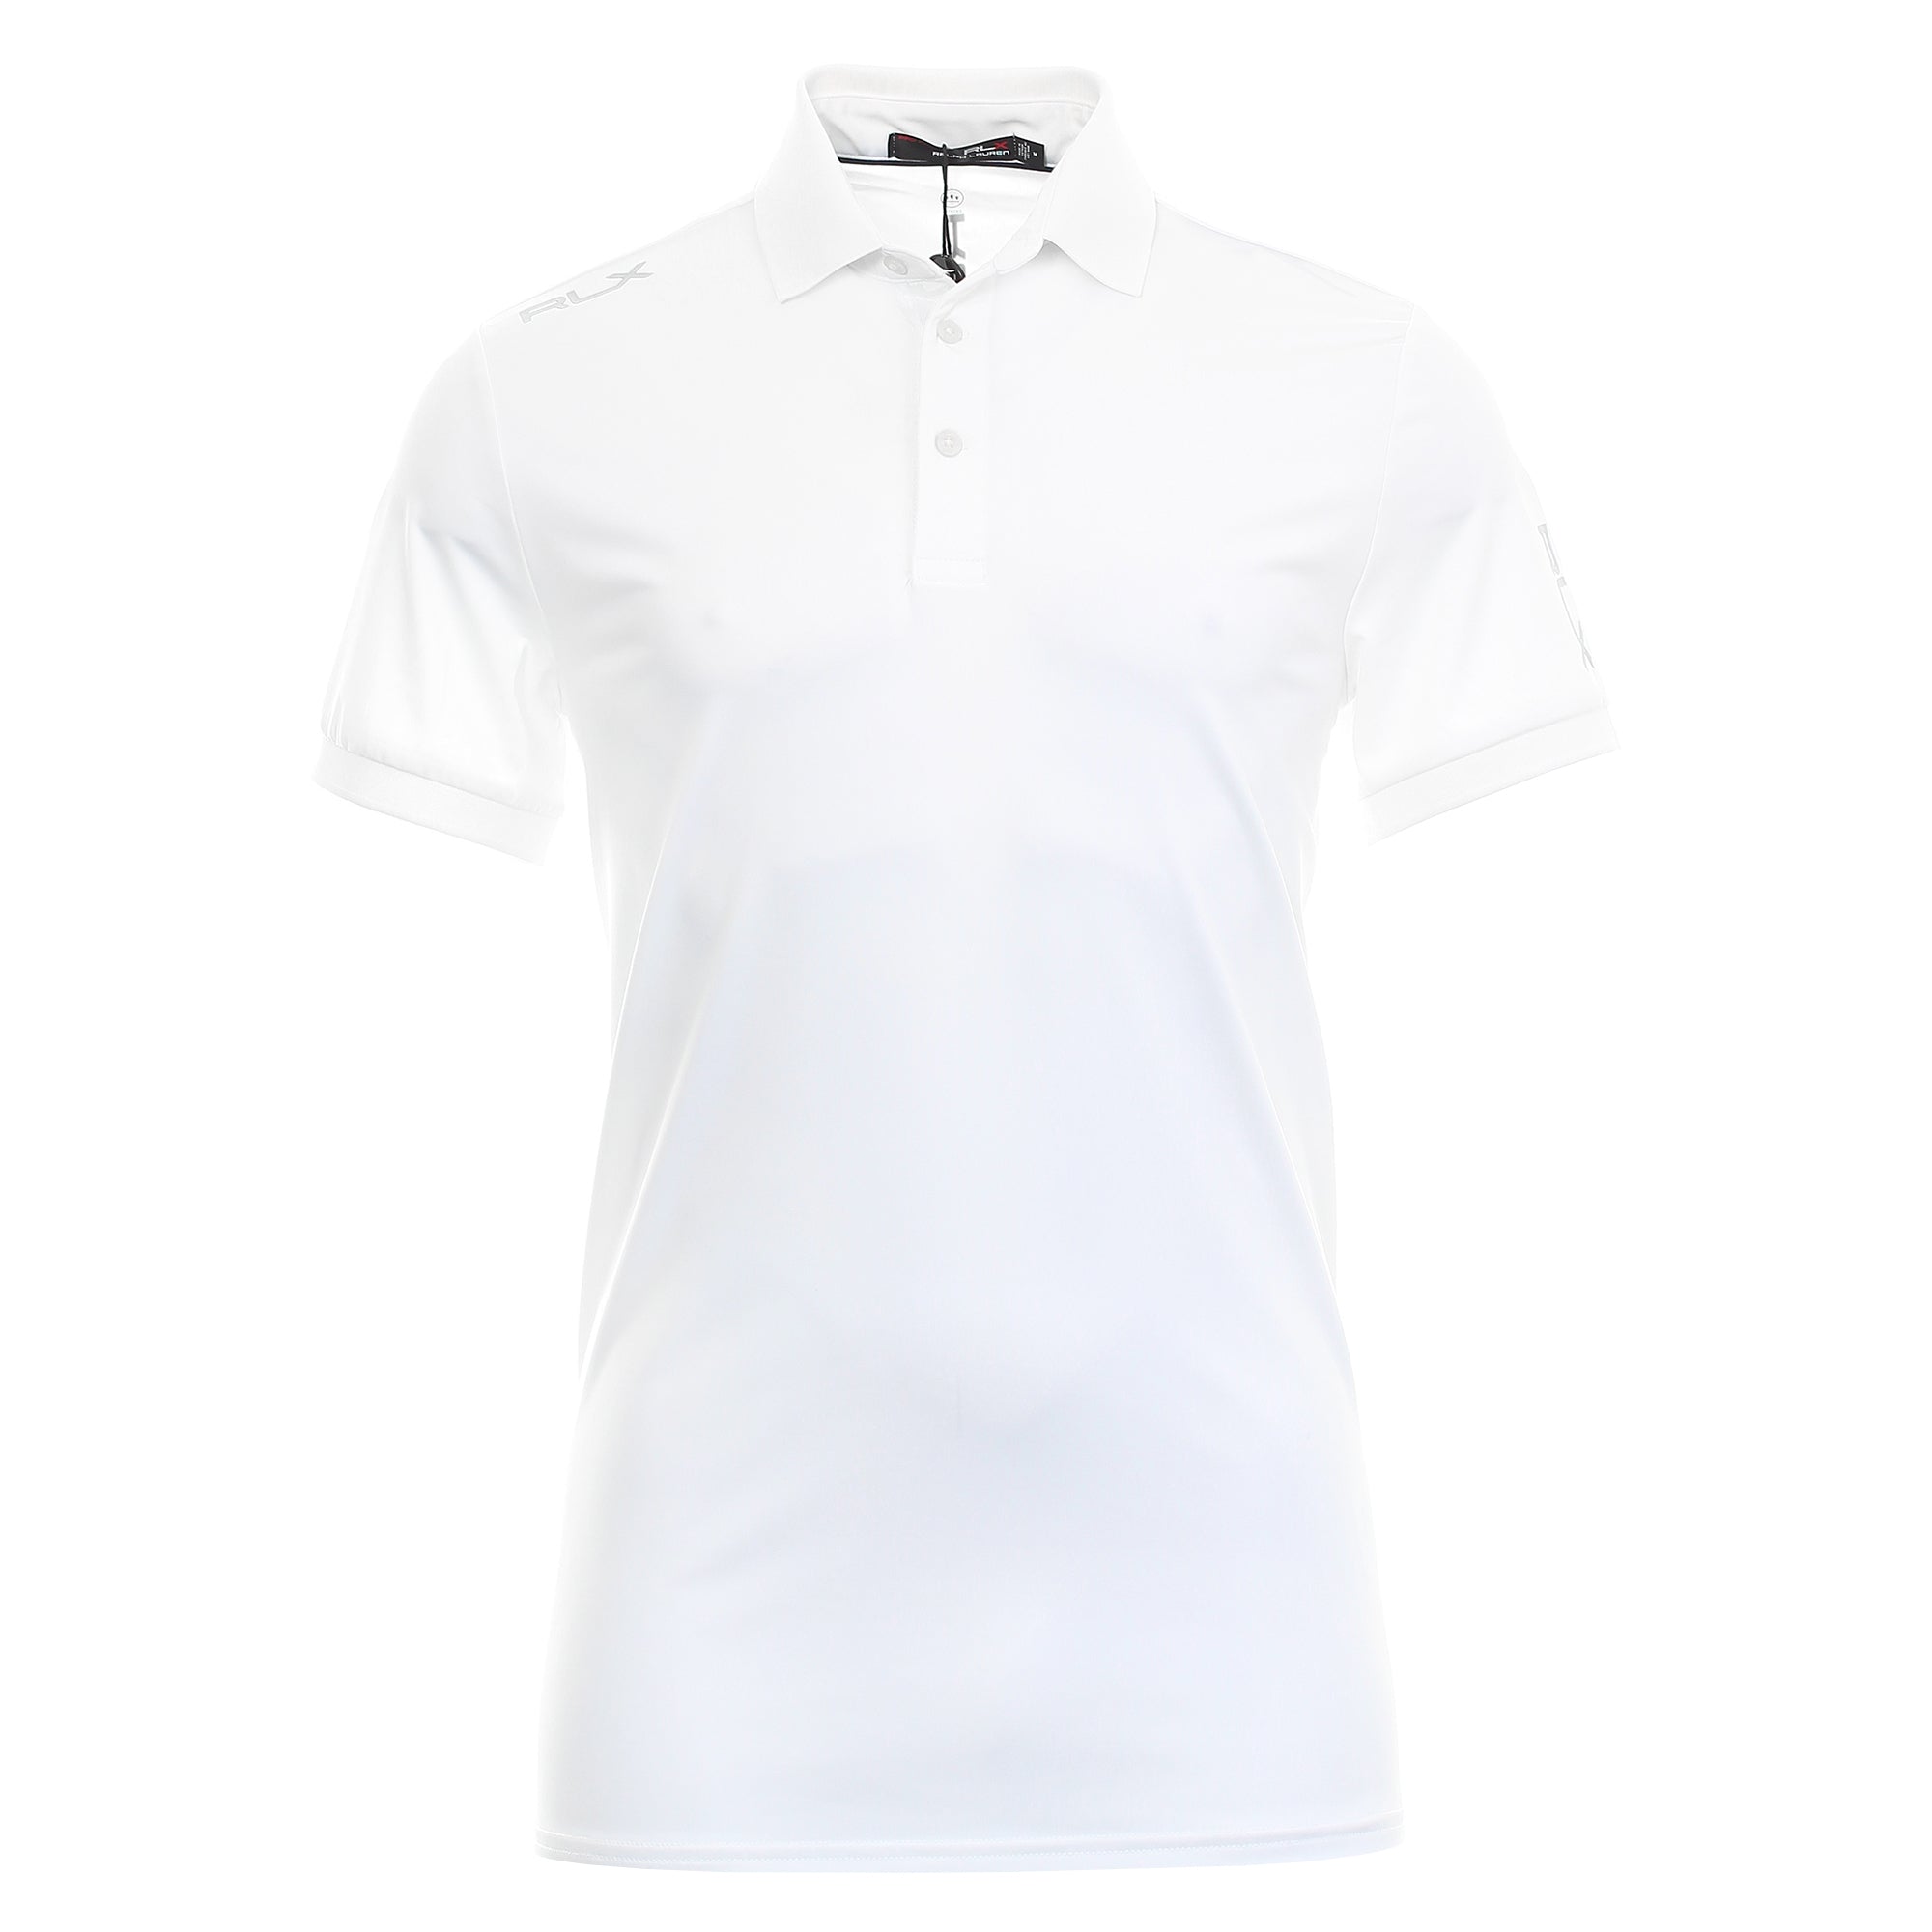 RLX Ralph Lauren Lightweight Jersey Polo Shirt 785865186 White 002 ...